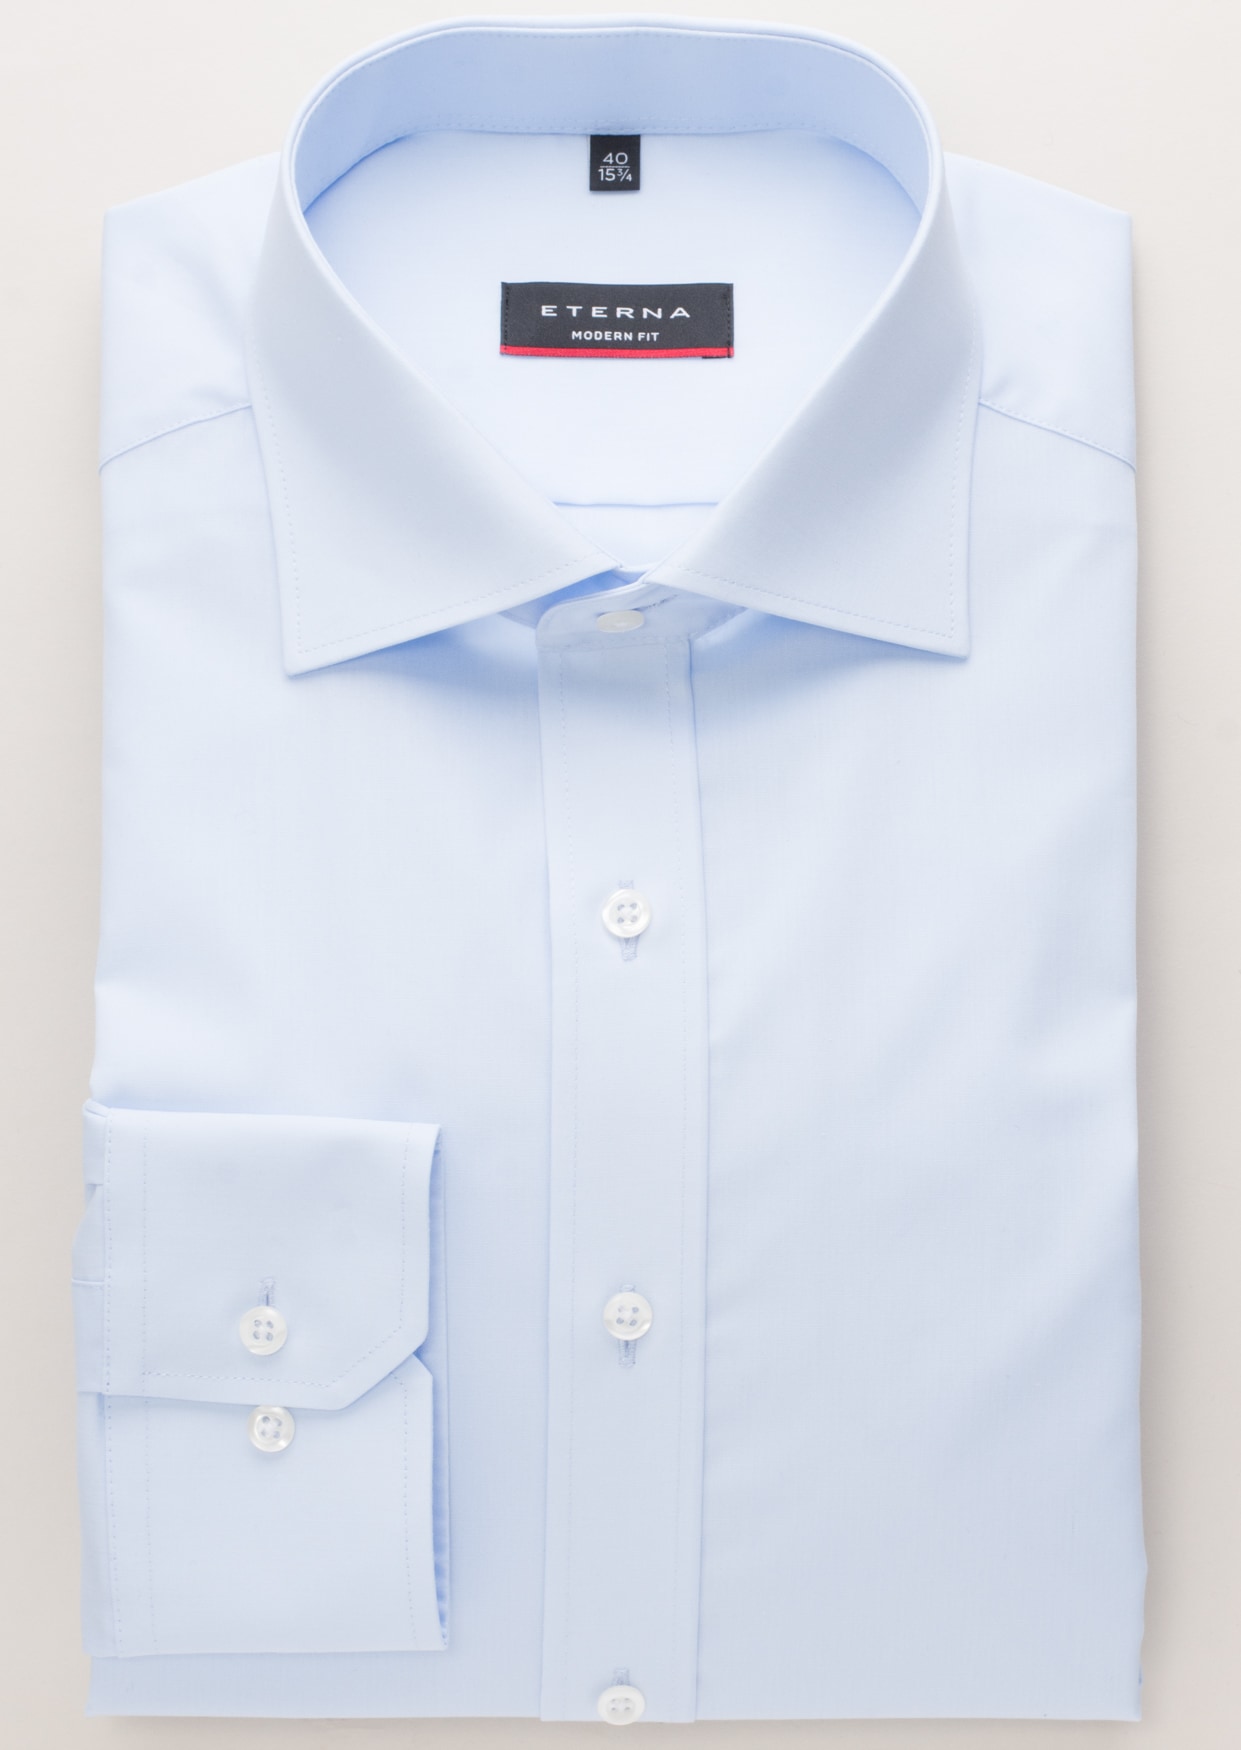 MODERN FIT Original Shirt in light blue plain | light blue | 37 | long  sleeve | 1SH00113-01-11-37-1/1 | Blusenshirts